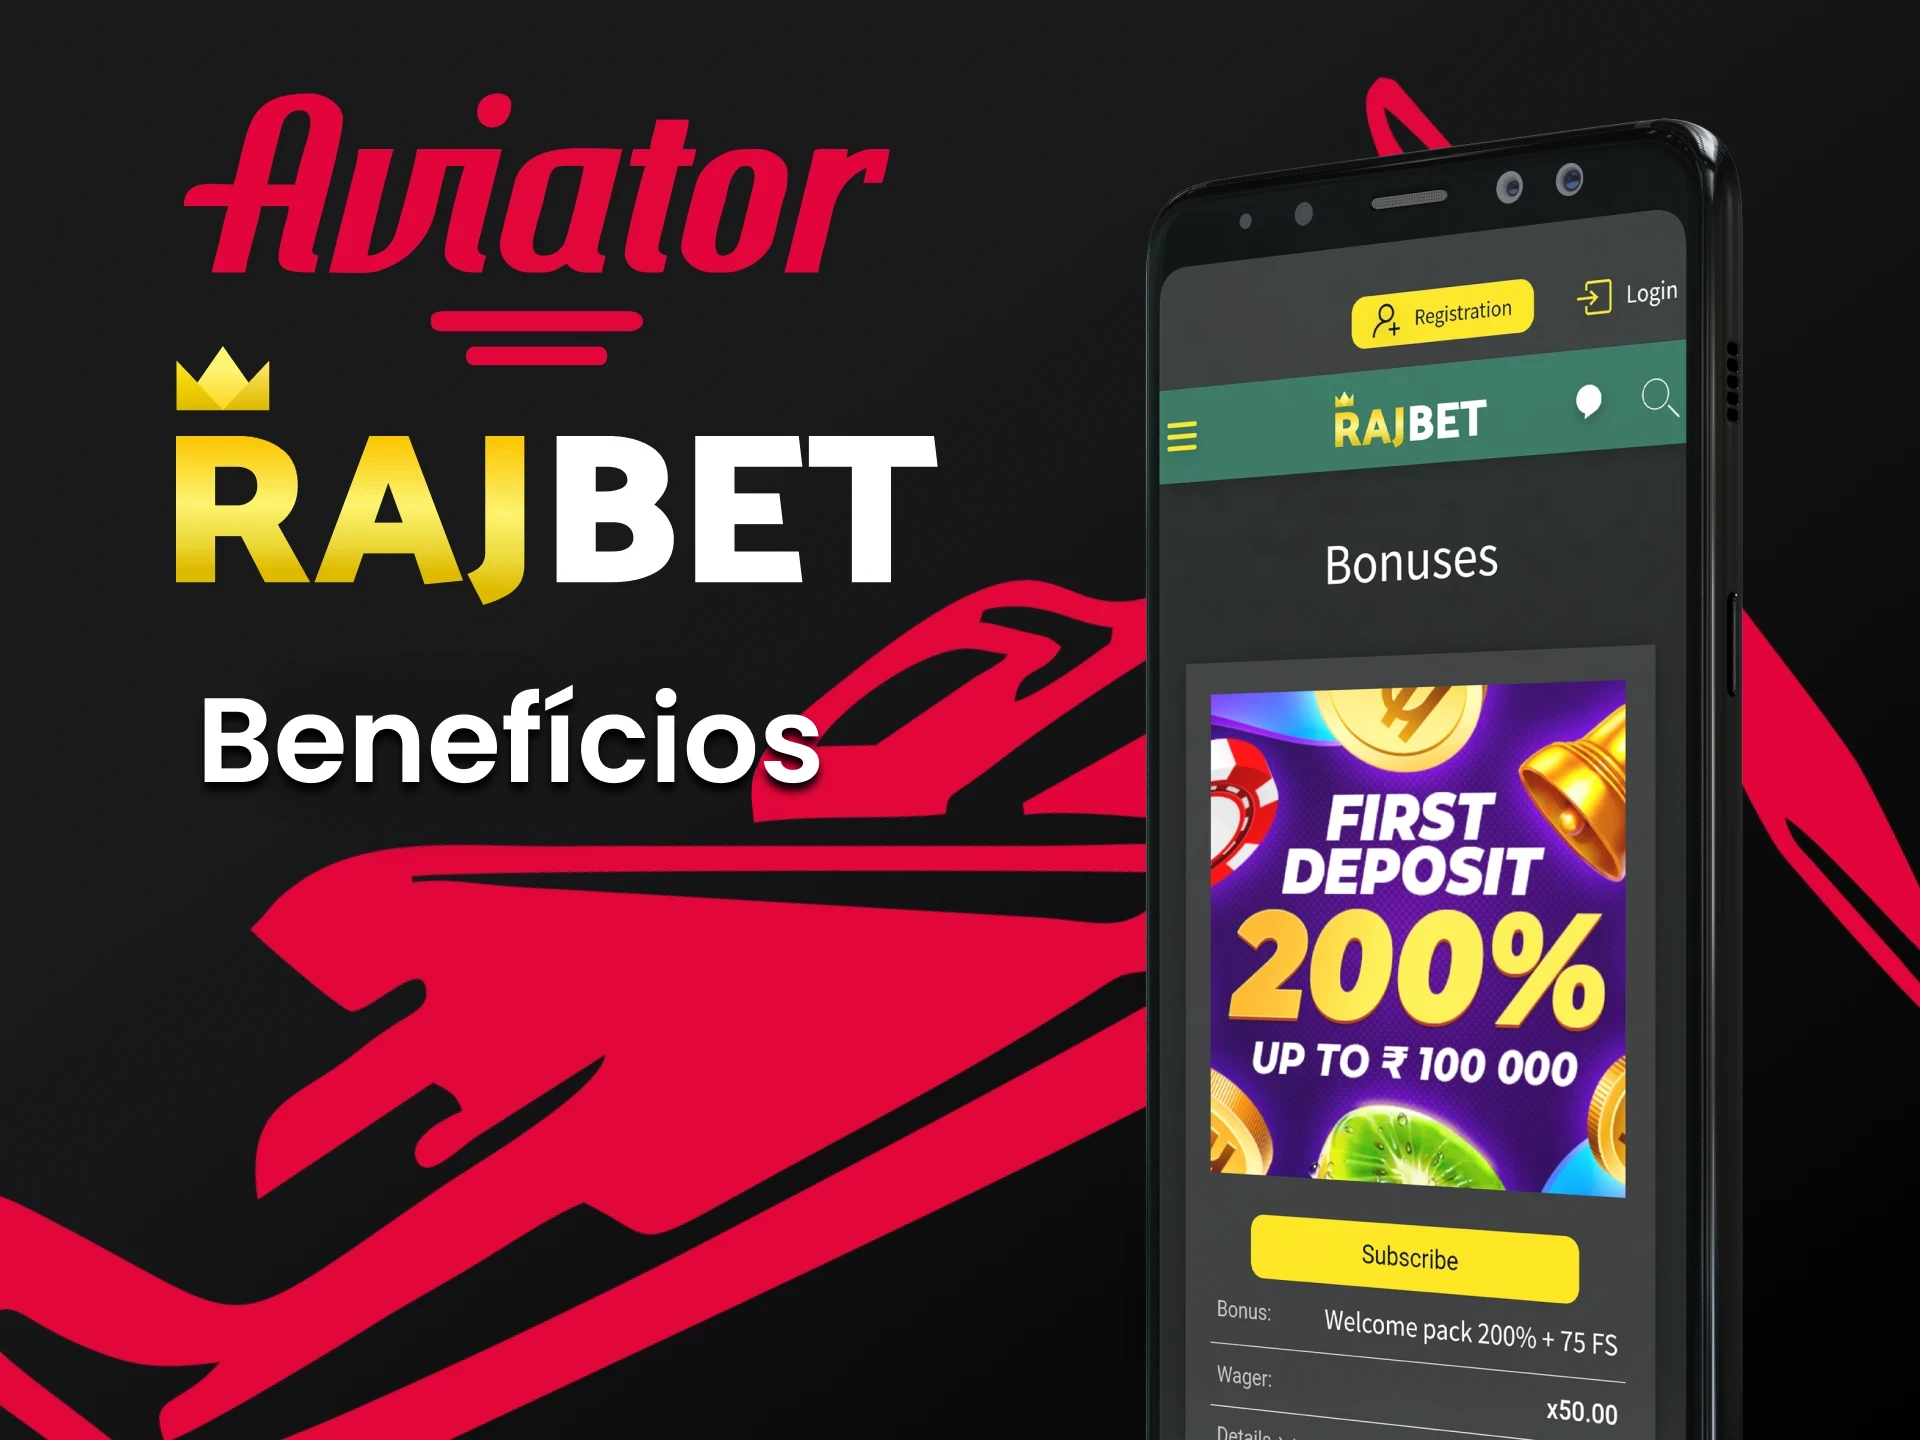 Conheça os benefícios do aplicativo Rajbet para jogar Aviator.